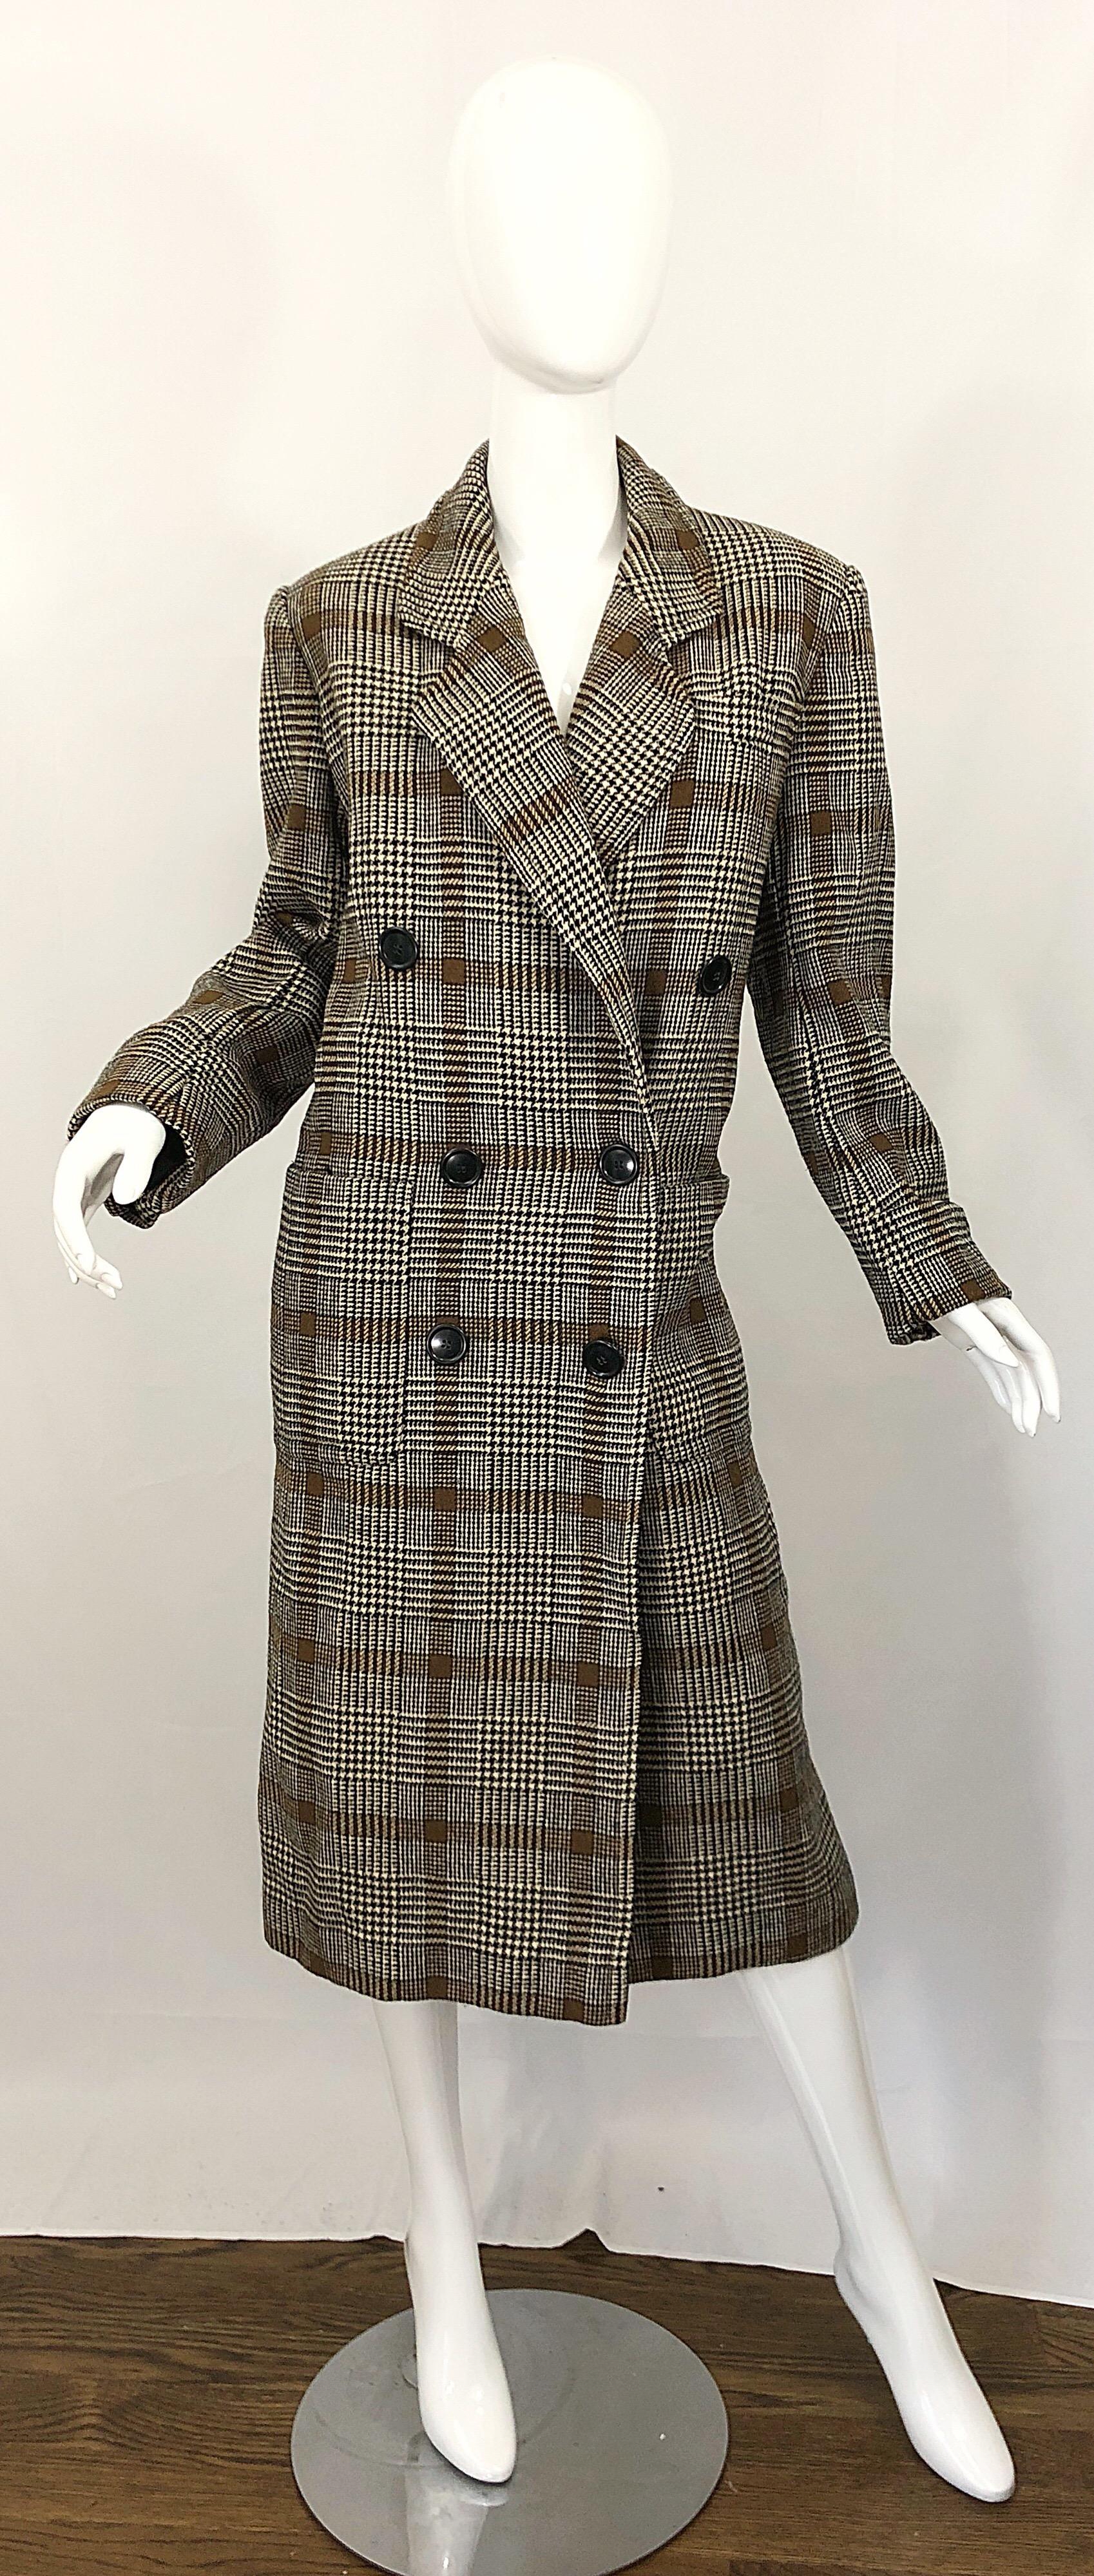 Chic début des années 1980 vintage CALVIN KLEIN marron glen plaid double boutonnage veste en laine manteau ! Silhouette classique avec des couleurs neutres de brun, tan et noir. Poches de chaque côté de la taille. Entièrement doublé. Le manteau